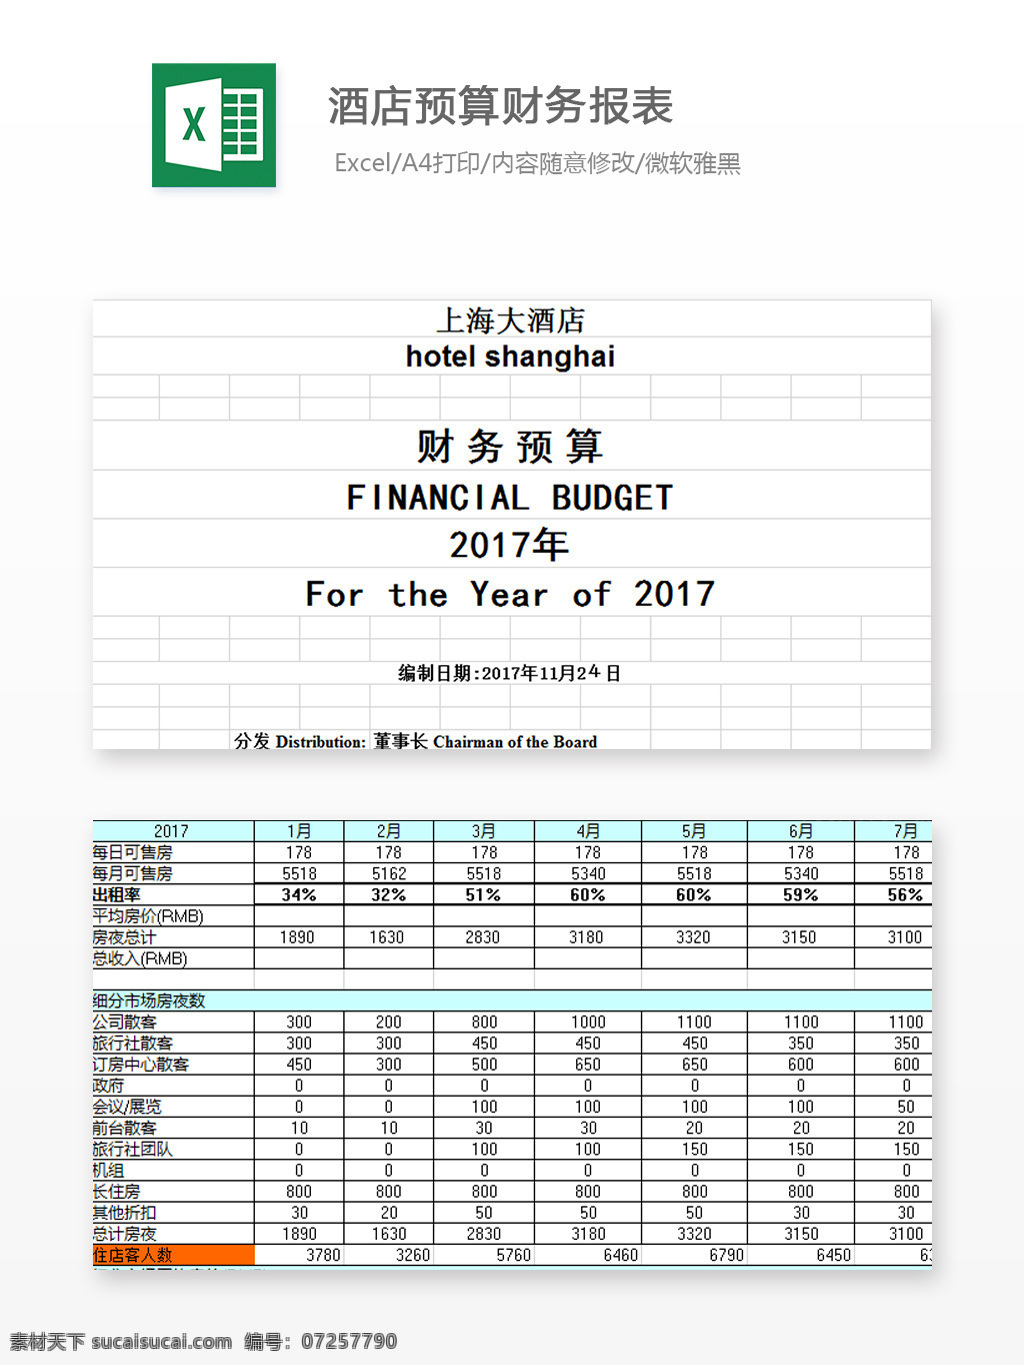 酒店 预算 财务 报表 excel 图表 图表模板 模板 文档 表格 表格模板 自动变换 表格设计 预算财务报表 预算表 财务表